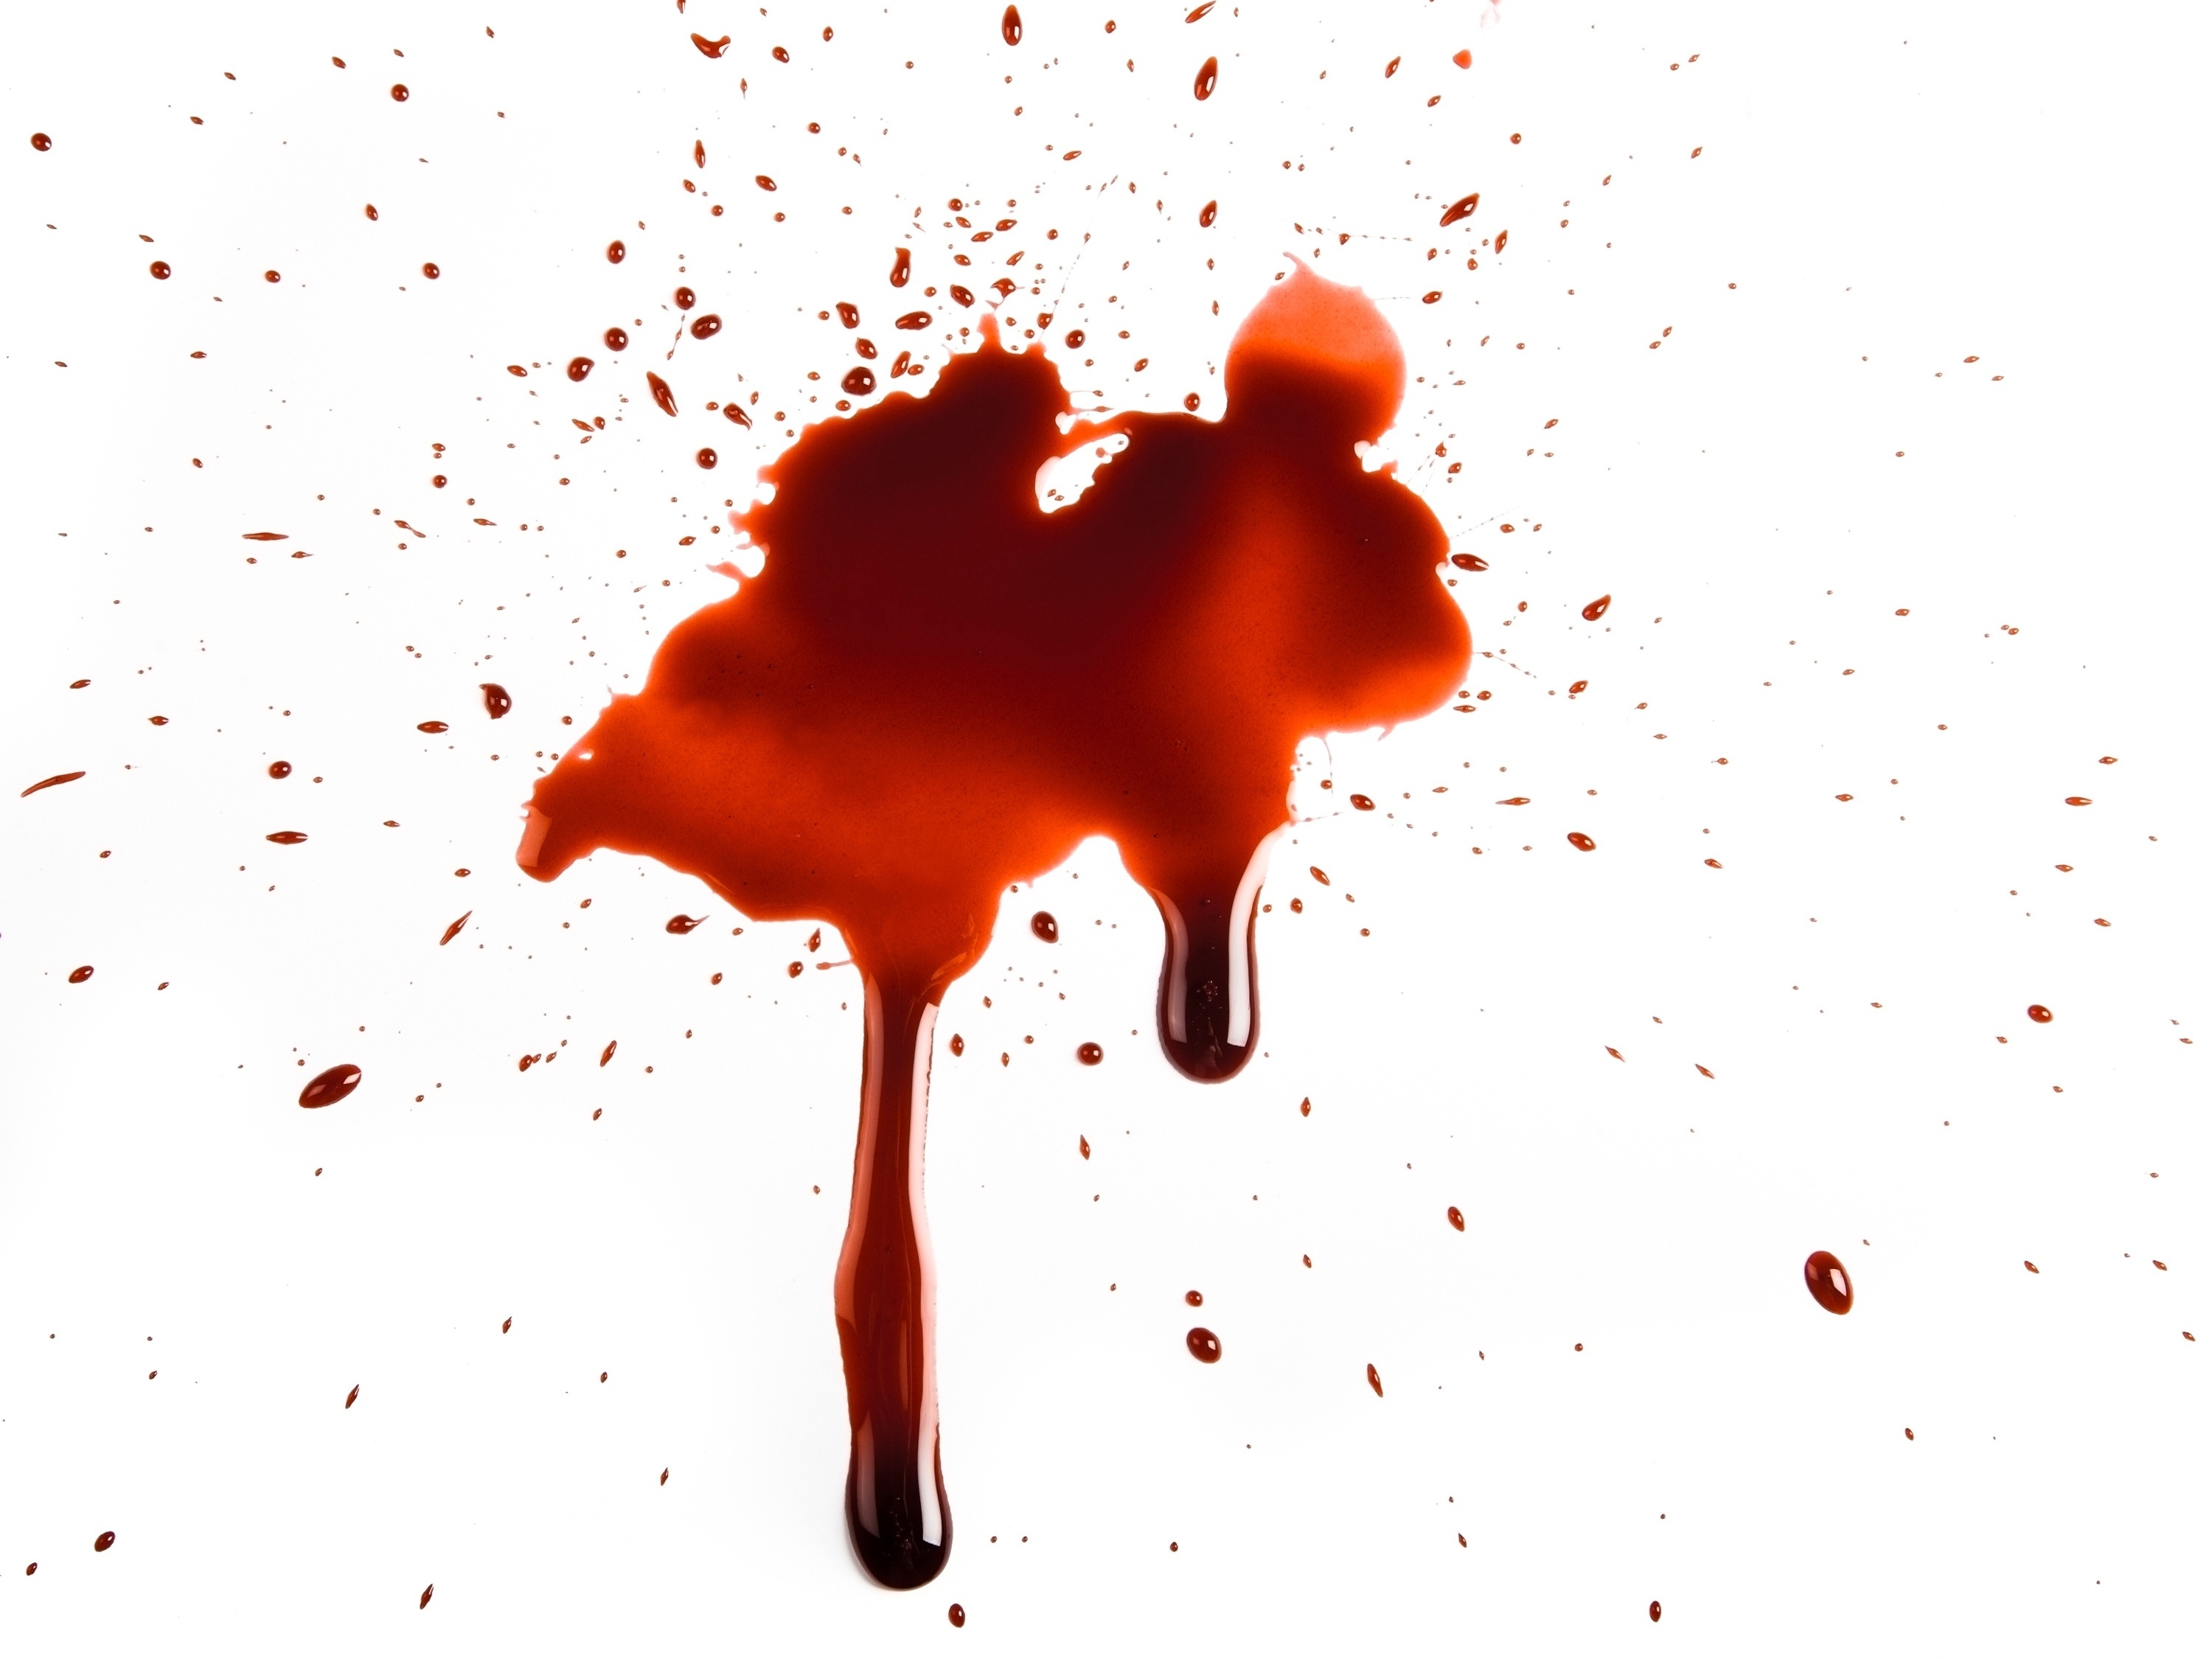  Sanjati krv u ustima: što to znači? Je li to dobro ili loše?